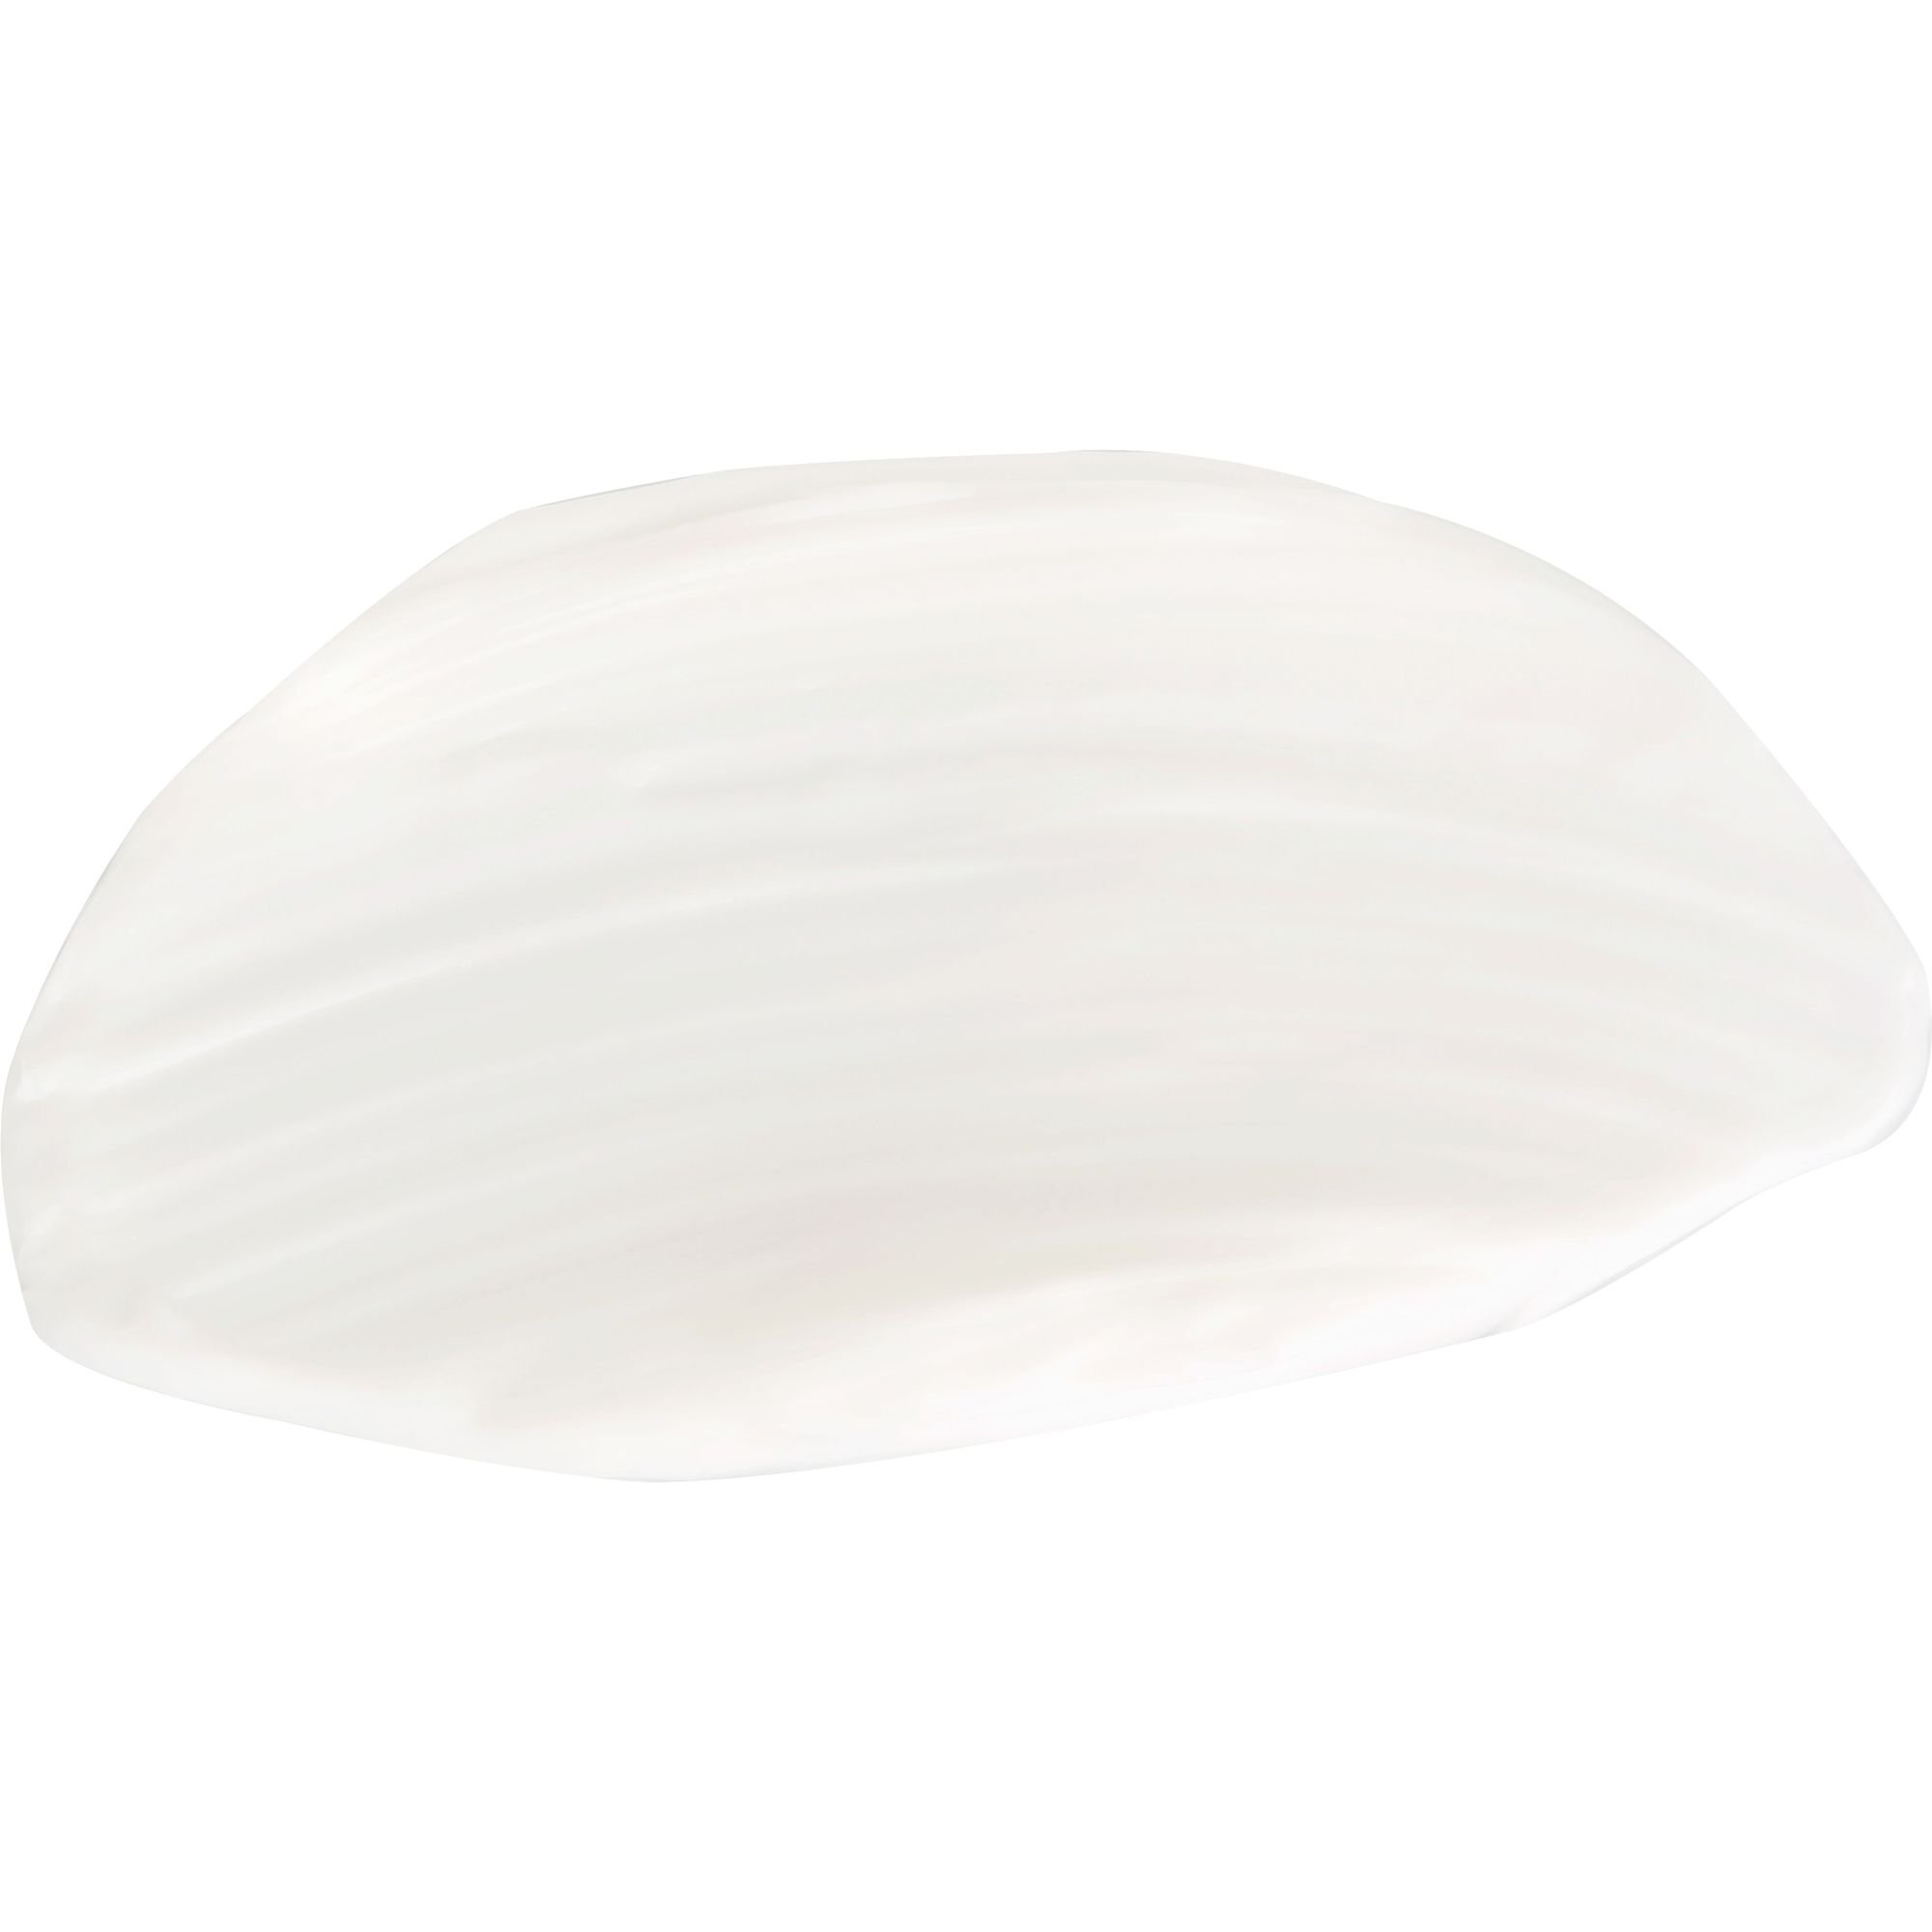 Трансдермальный крем с липосомами для нормальной и сухой кожи Christina Transdermal Cream with Liposomes 60 мл - фото 3